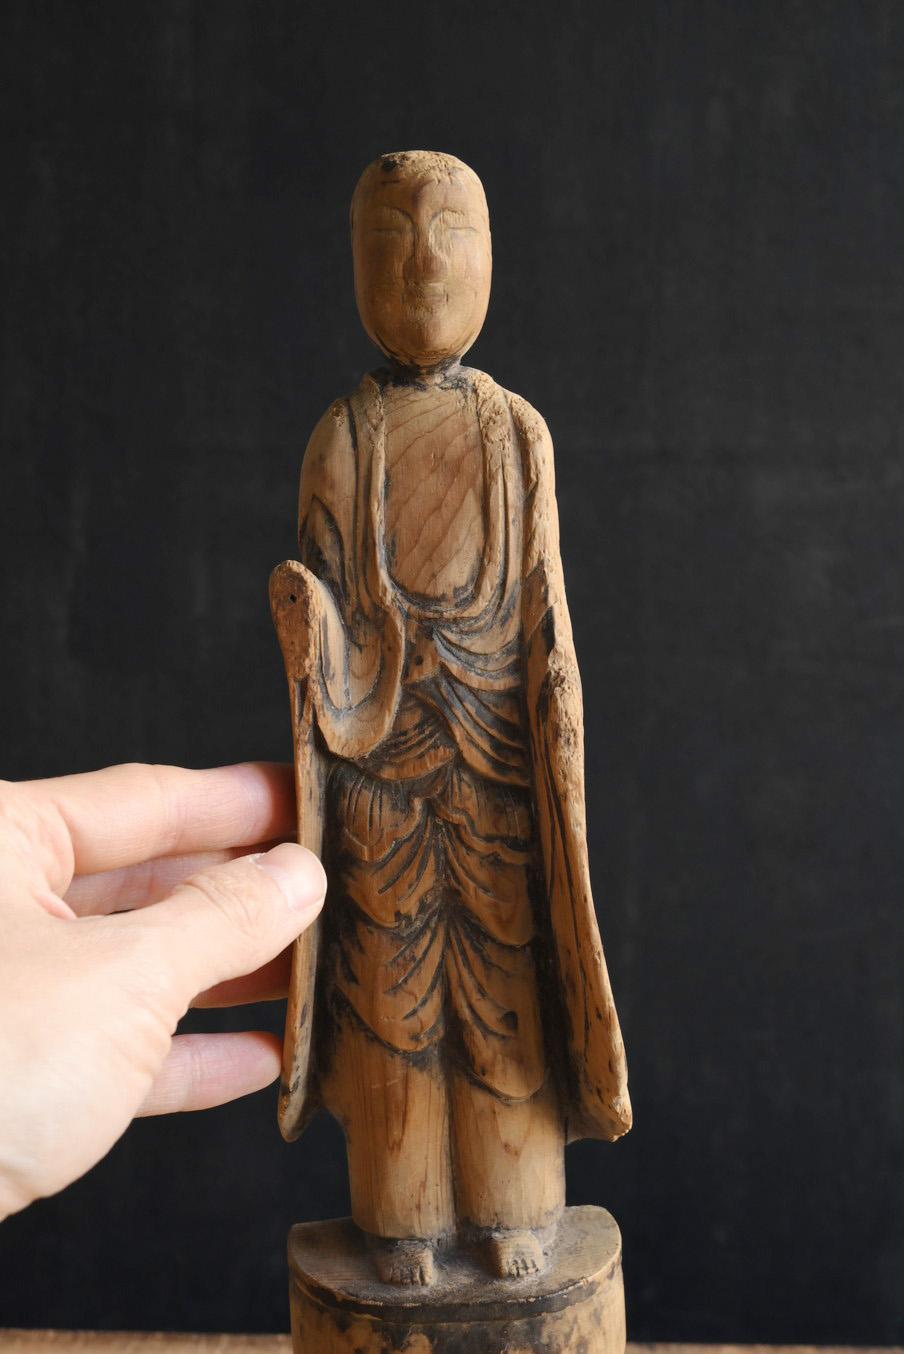 Dies ist eine alte japanische buddhistische Statue aus der Edo-Zeit.
Das MATERIAL ist vermutlich Zypresse oder Zeder.
Der quadratische Sockel am unteren Ende wurde später hinzugefügt.
Die Gottheit dieser Buddha-Statue ist Jizo Bodhisattva.
Diese